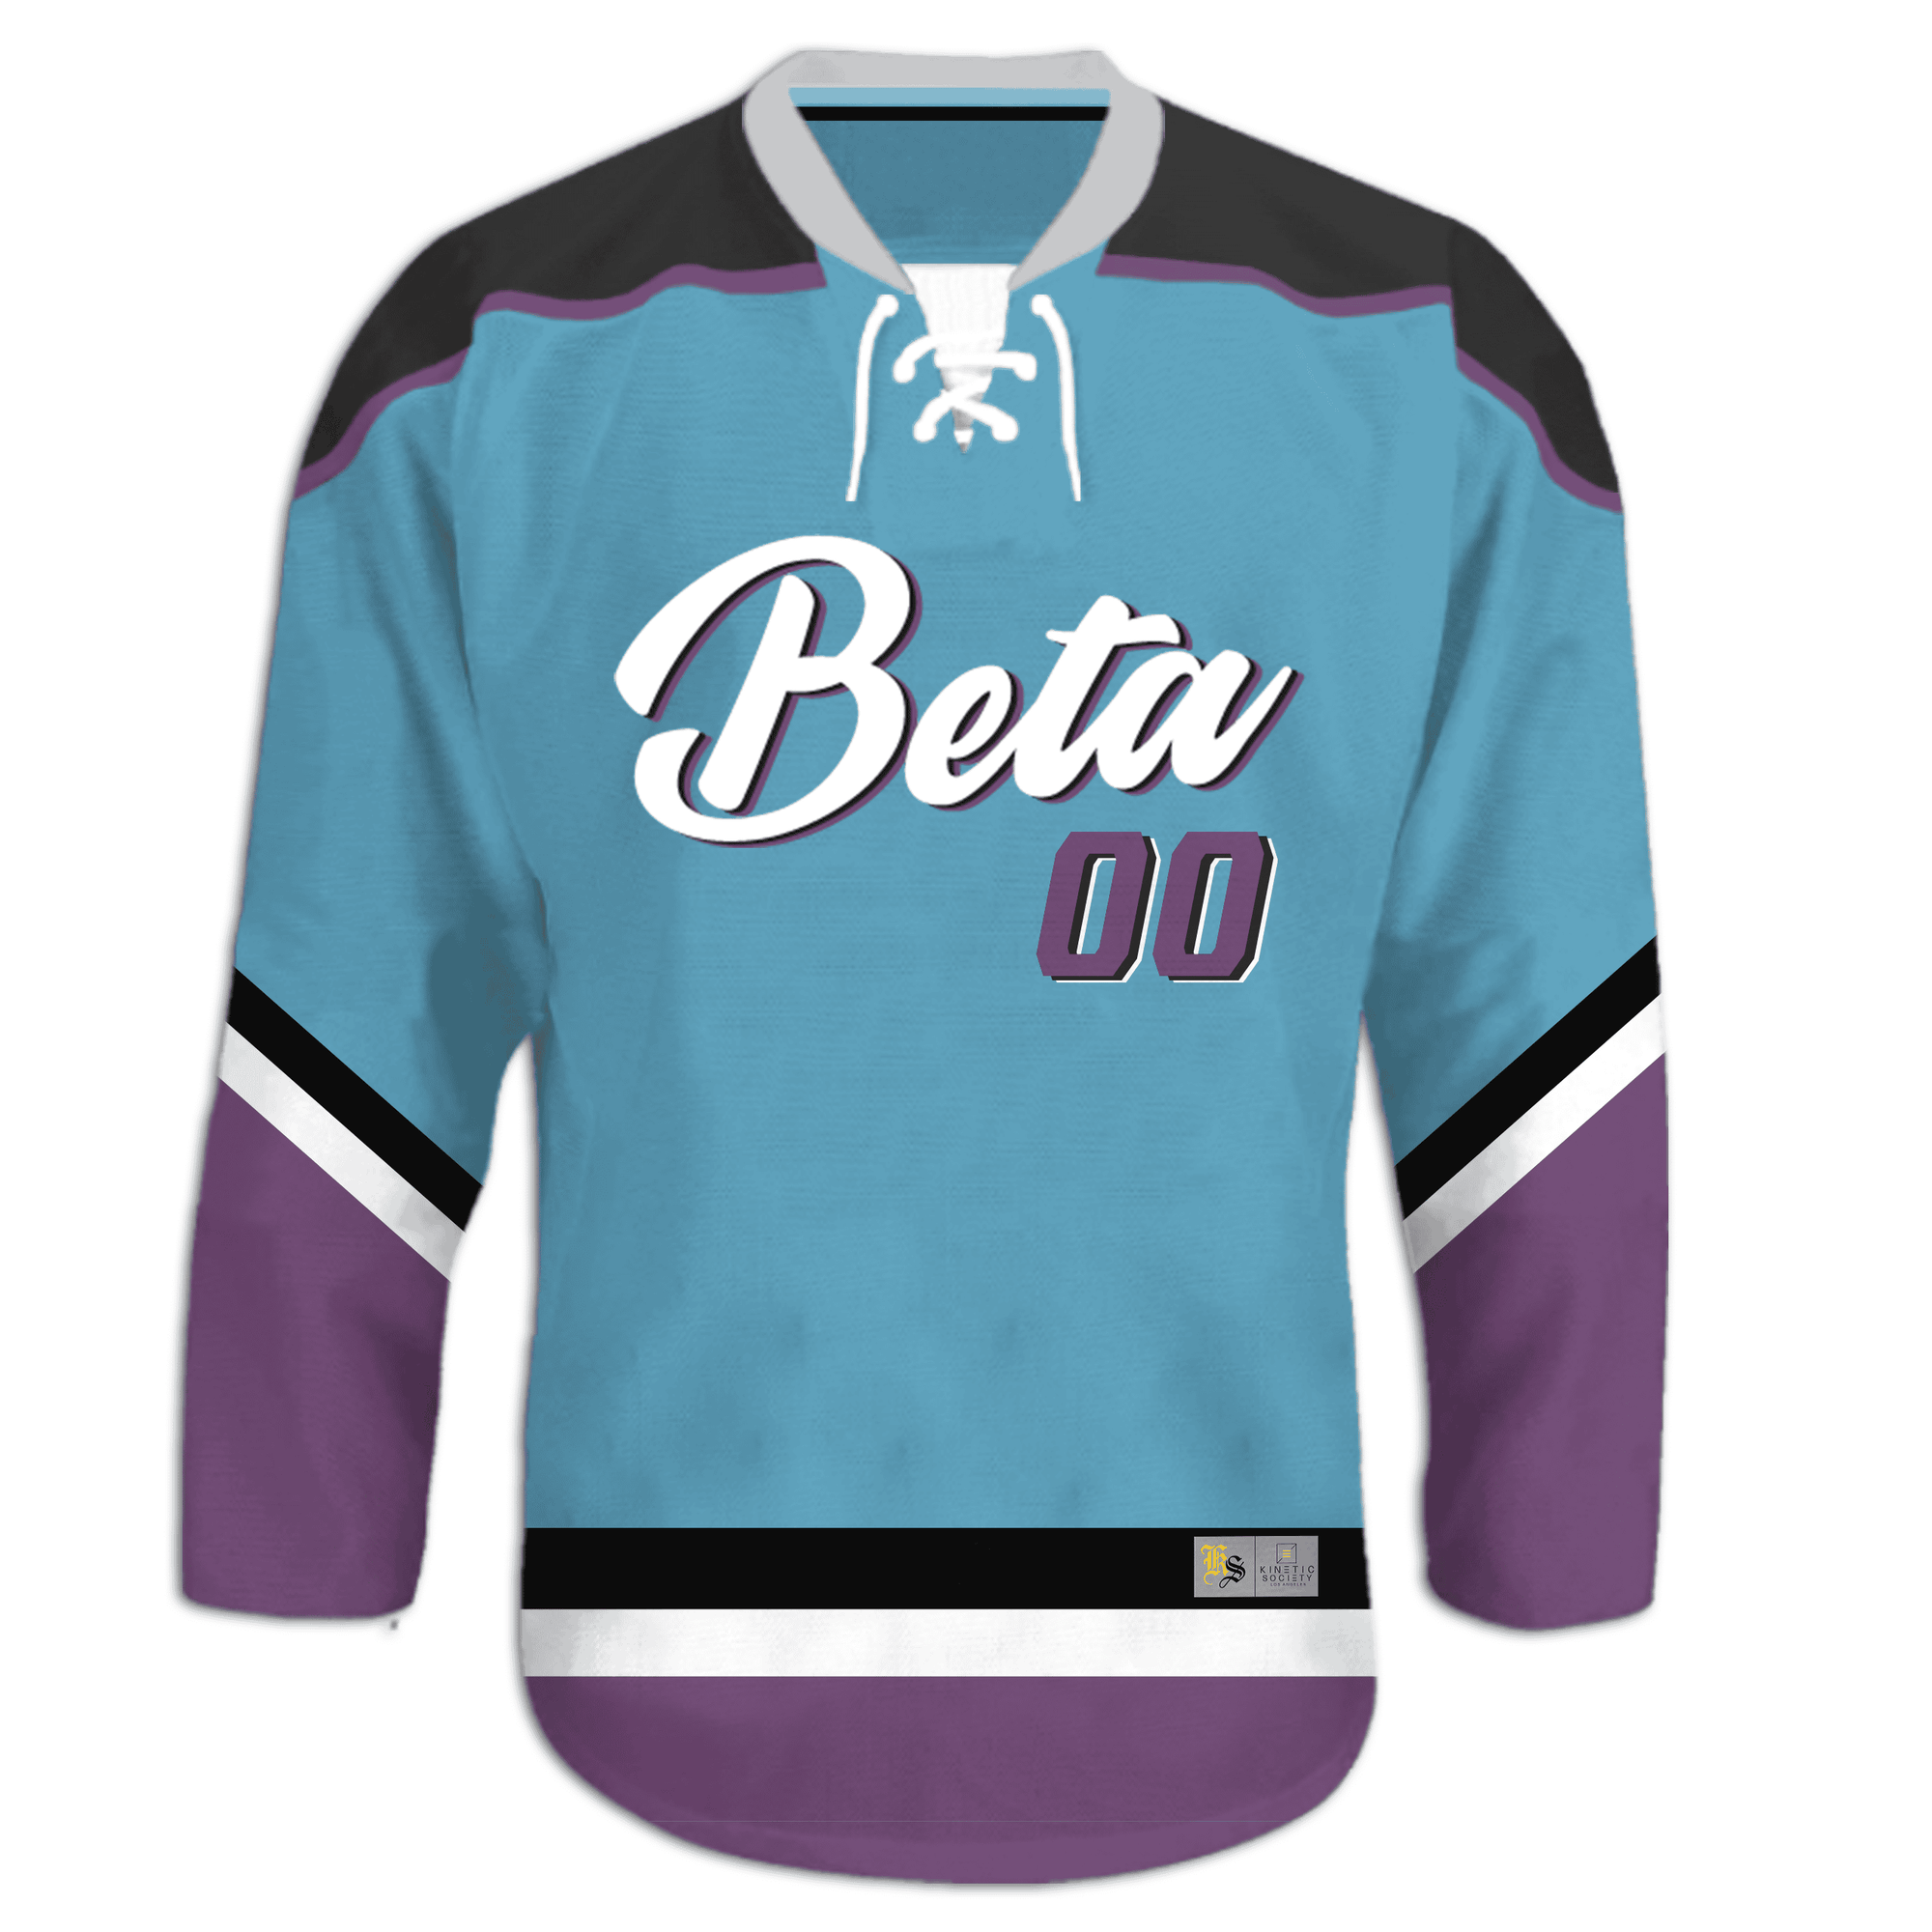 Beta Theta Pi - Kratos Hockey Jersey